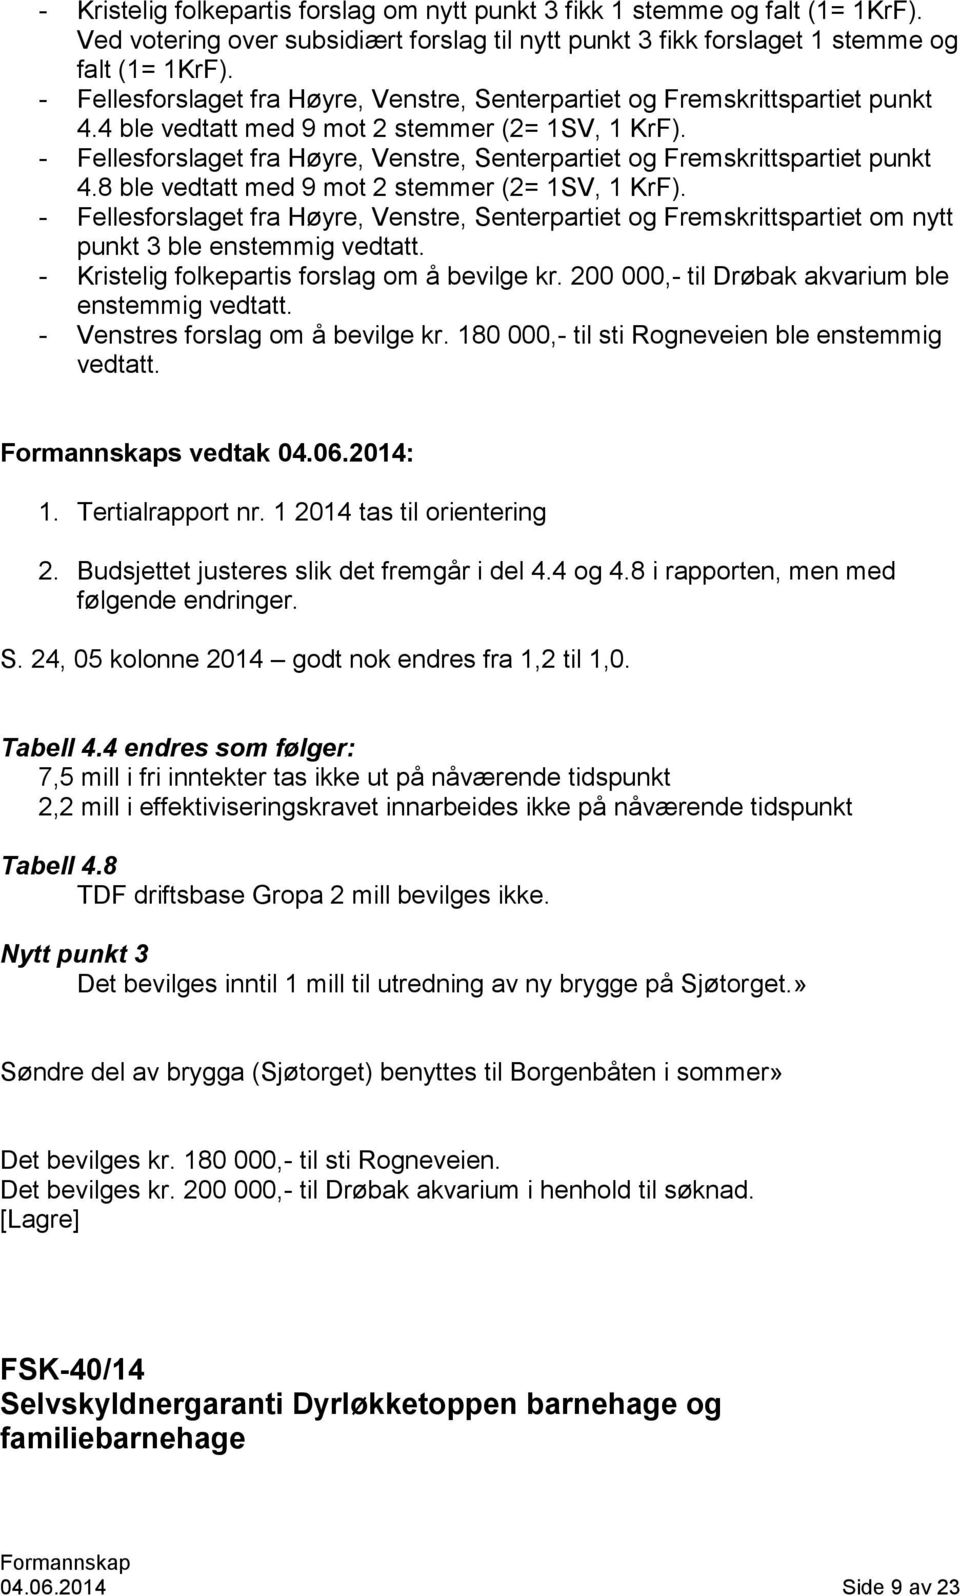 - Fellesforslaget fra Høyre, Venstre, Senterpartiet og Fremskrittspartiet punkt 4.8 ble vedtatt med 9 mot 2 stemmer (2= 1SV, 1 KrF).